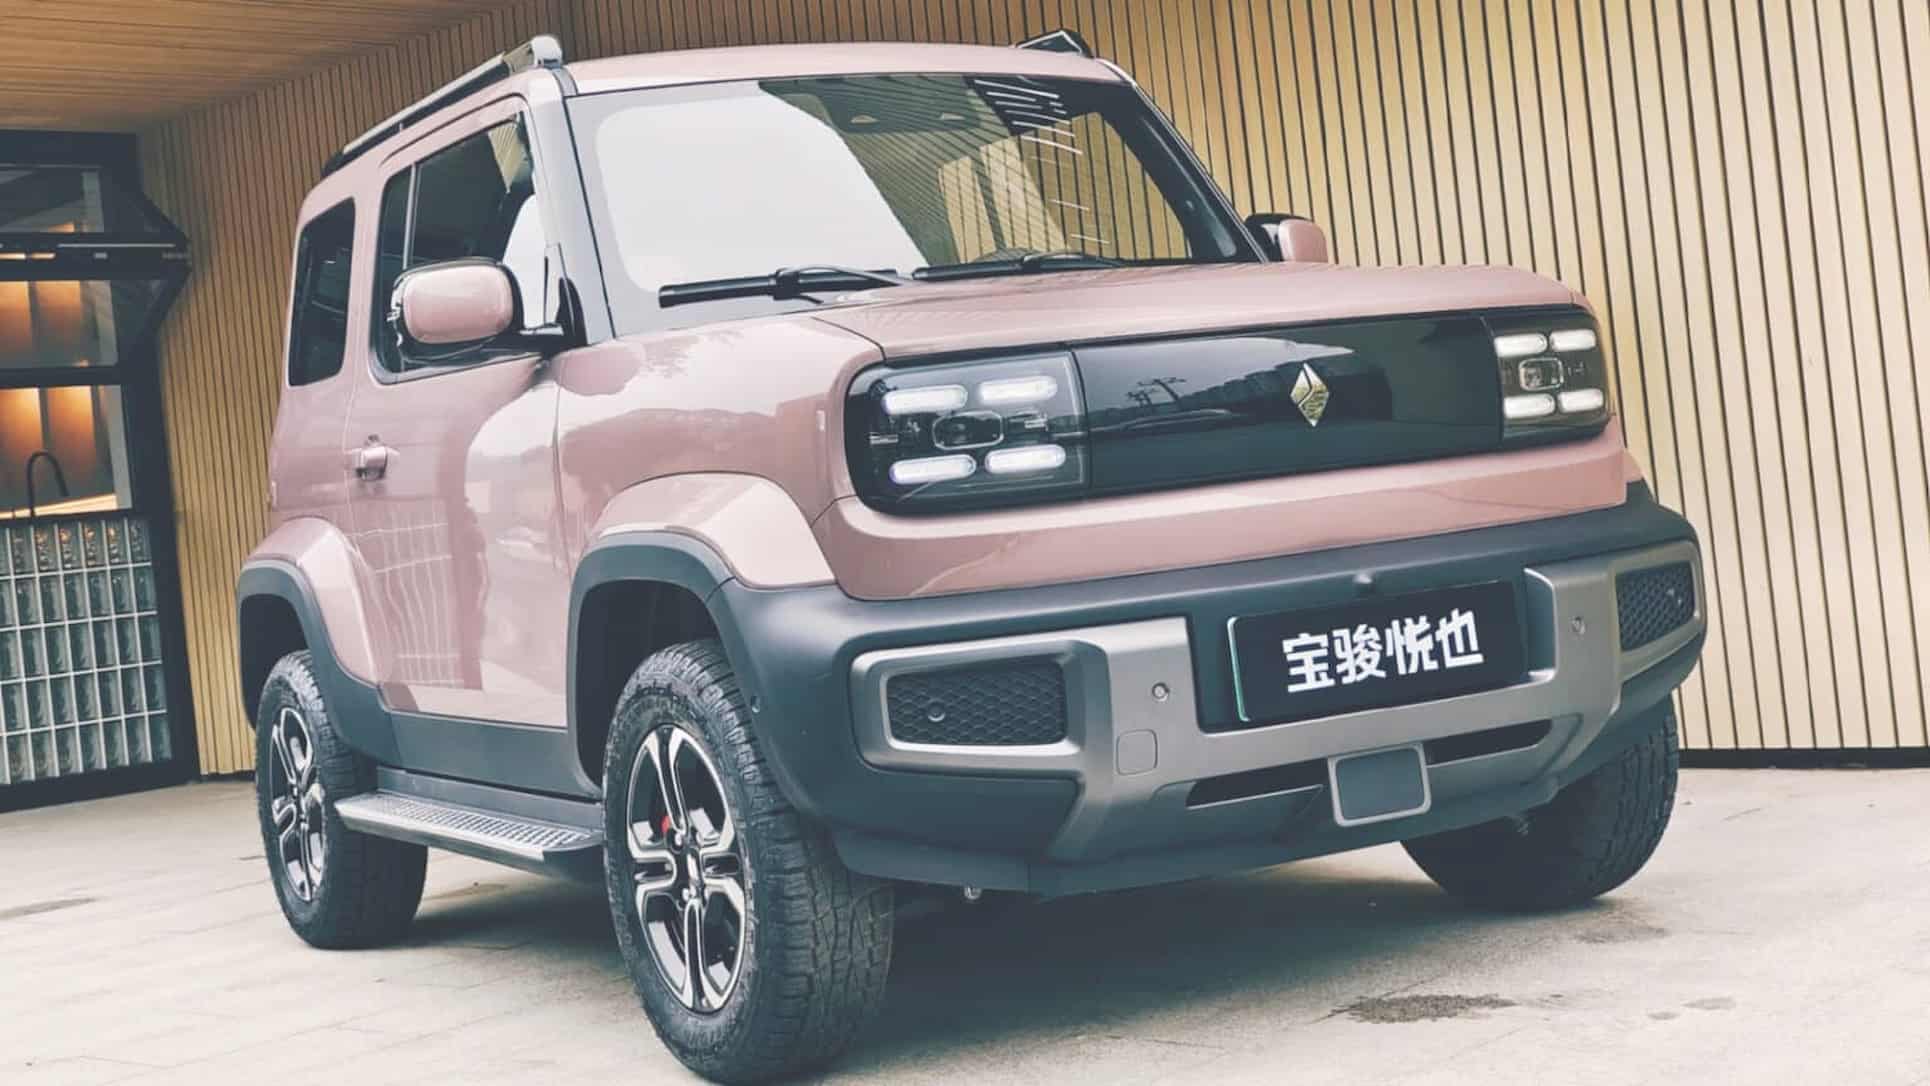 Baojun Yep electric SUV price unveiled in China CNC 1536x864 1